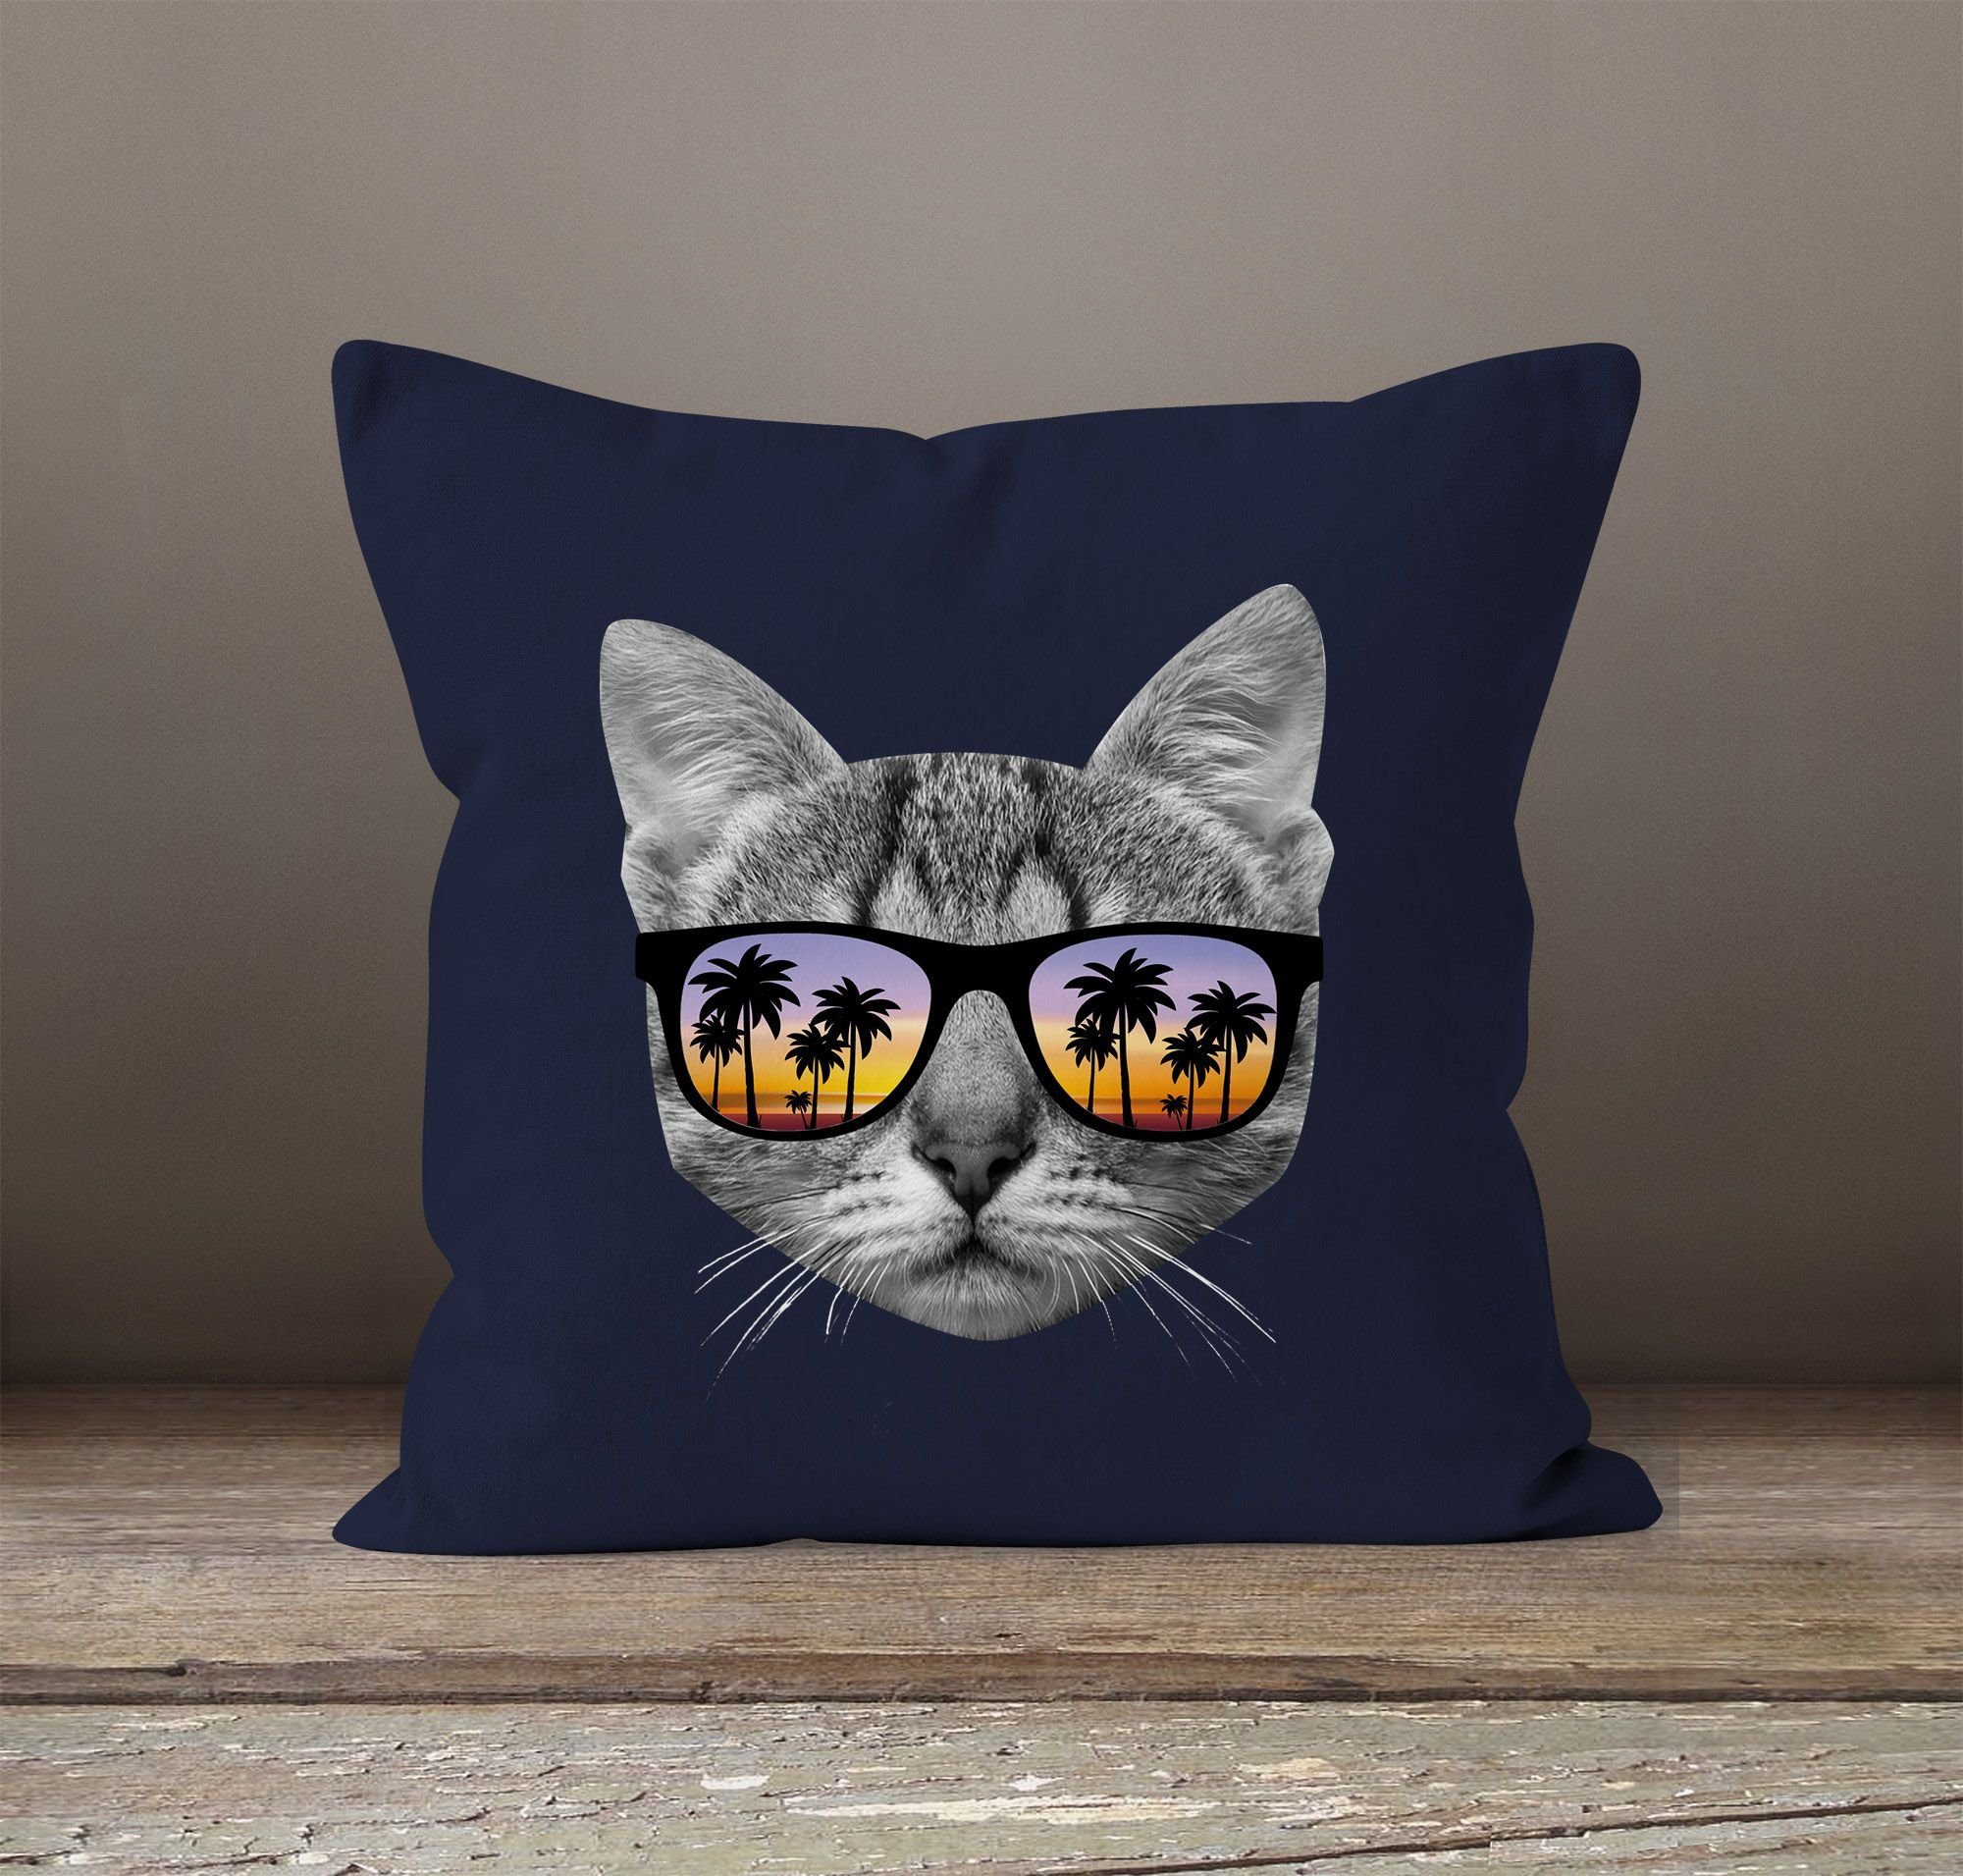 MoonWorks Dekokissen Kissenbezug Katze mit Baumwolle Kissen-Hülle navy Moonworks® Sonnenbrille 40x40